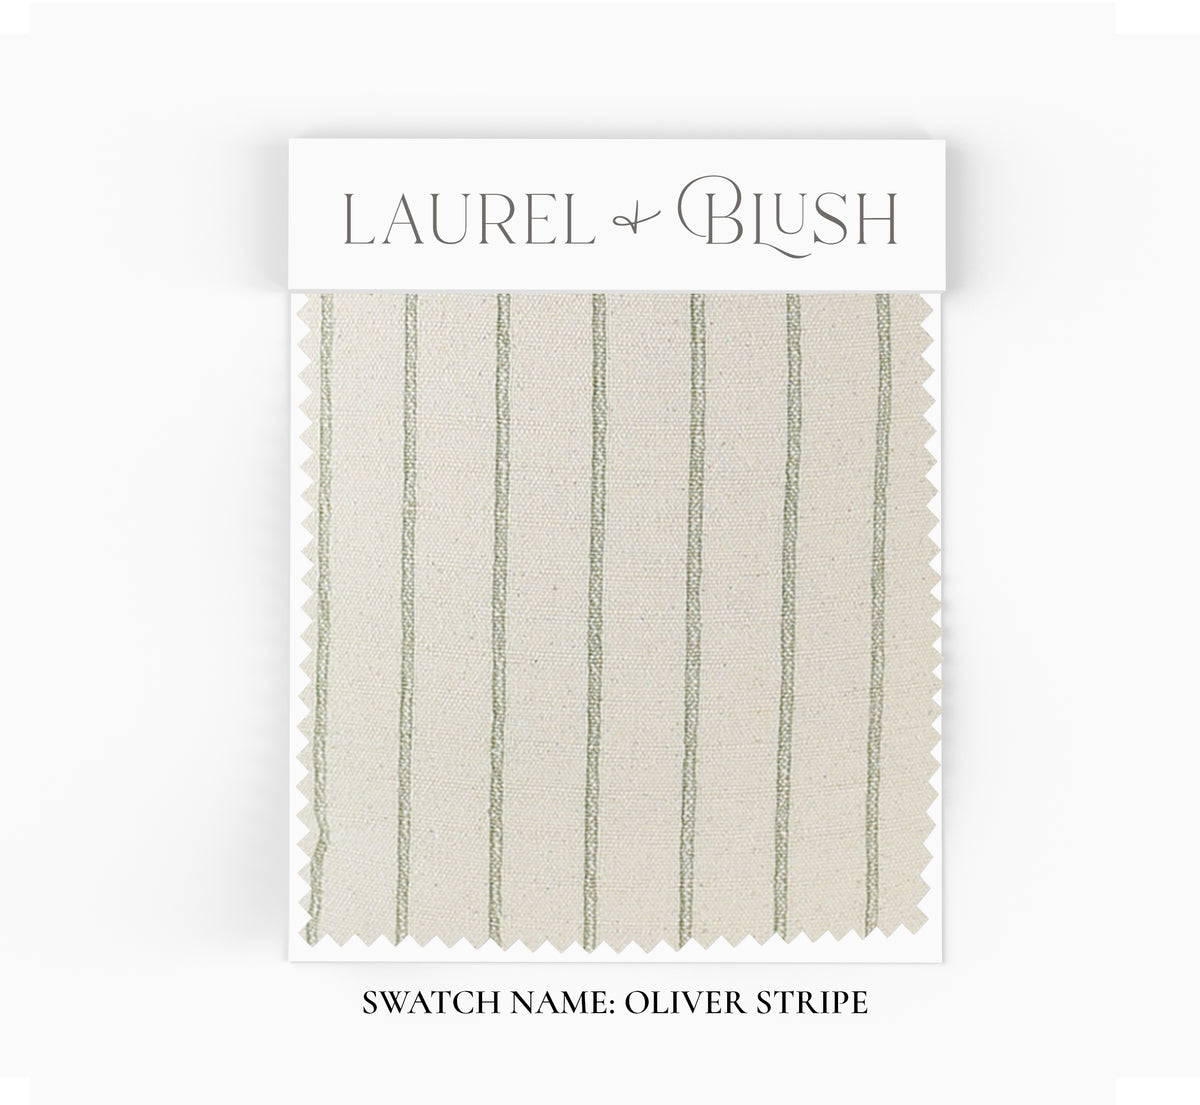 Fabric Scrap Bundles - Laurel and Blush